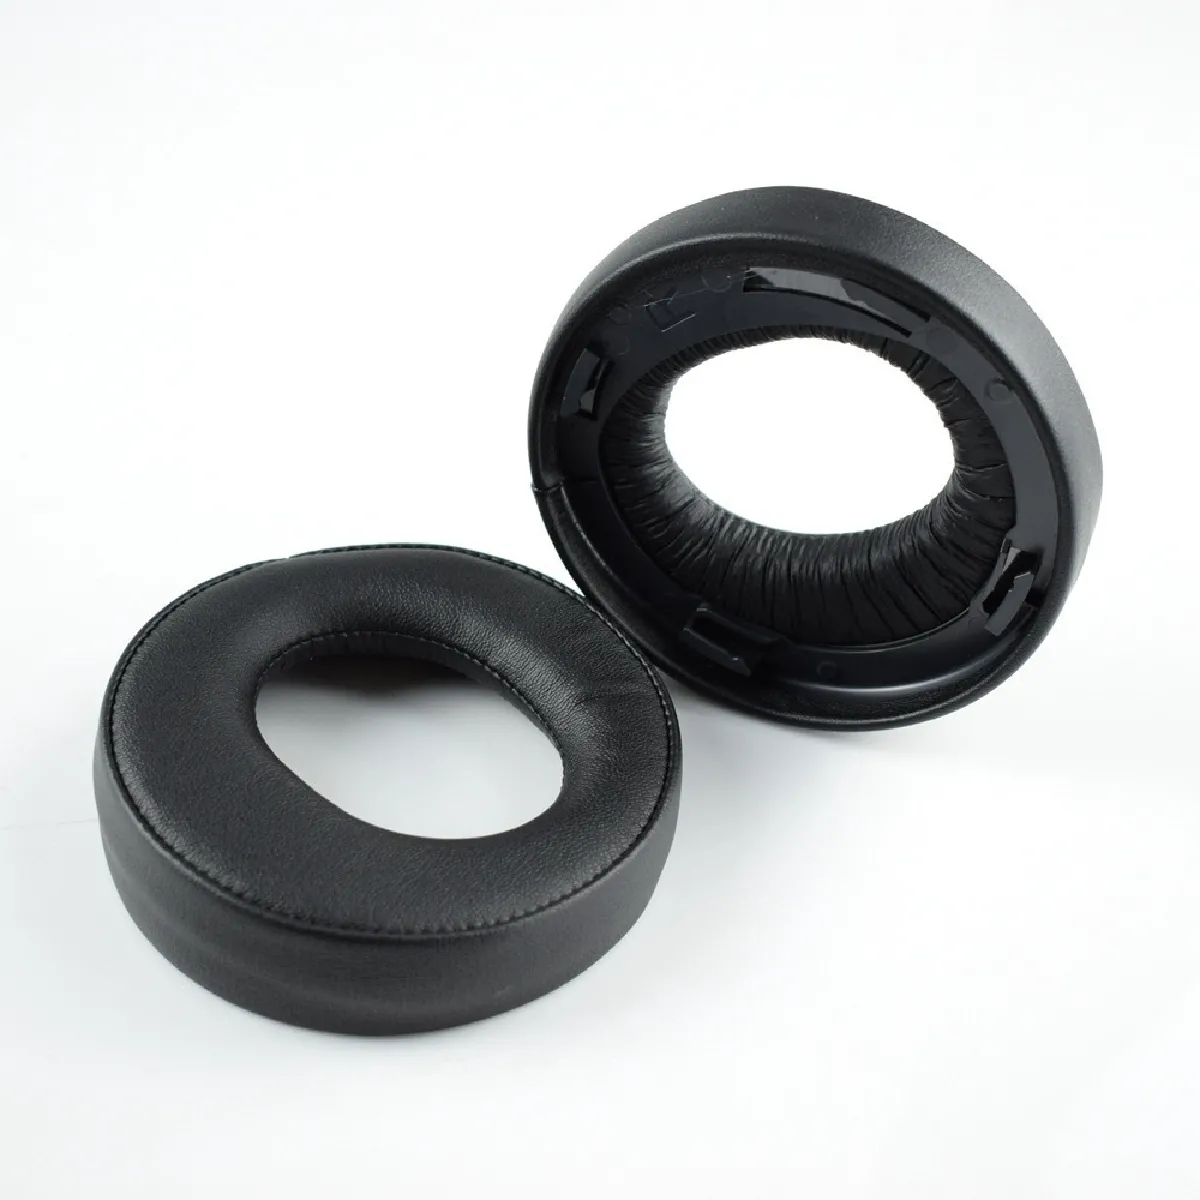 1 paire de manchons anti-bruit pour casque écouteur stéréo sans fil Sony PS4 Gold noir